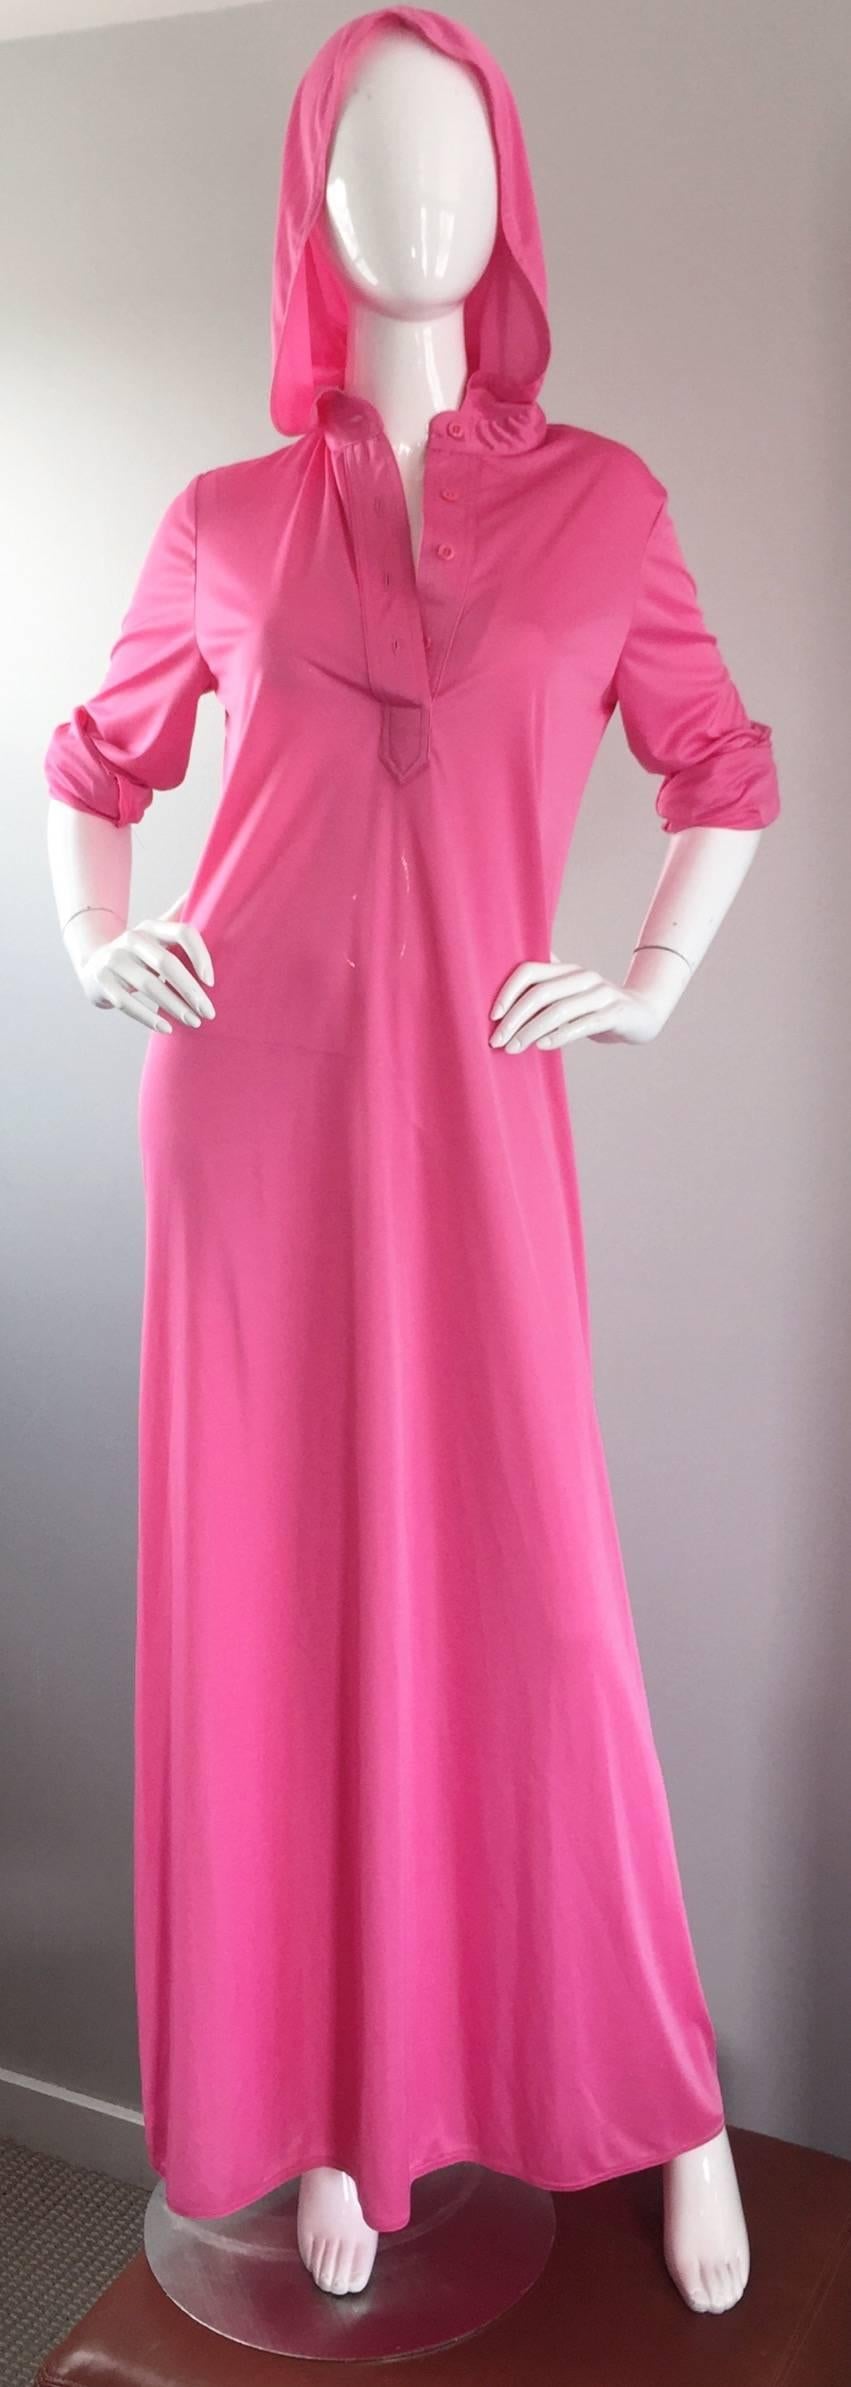 Geoffrey Beene Vintage Pink Hooded Caftan Long Sleeve Maxi Dress 2